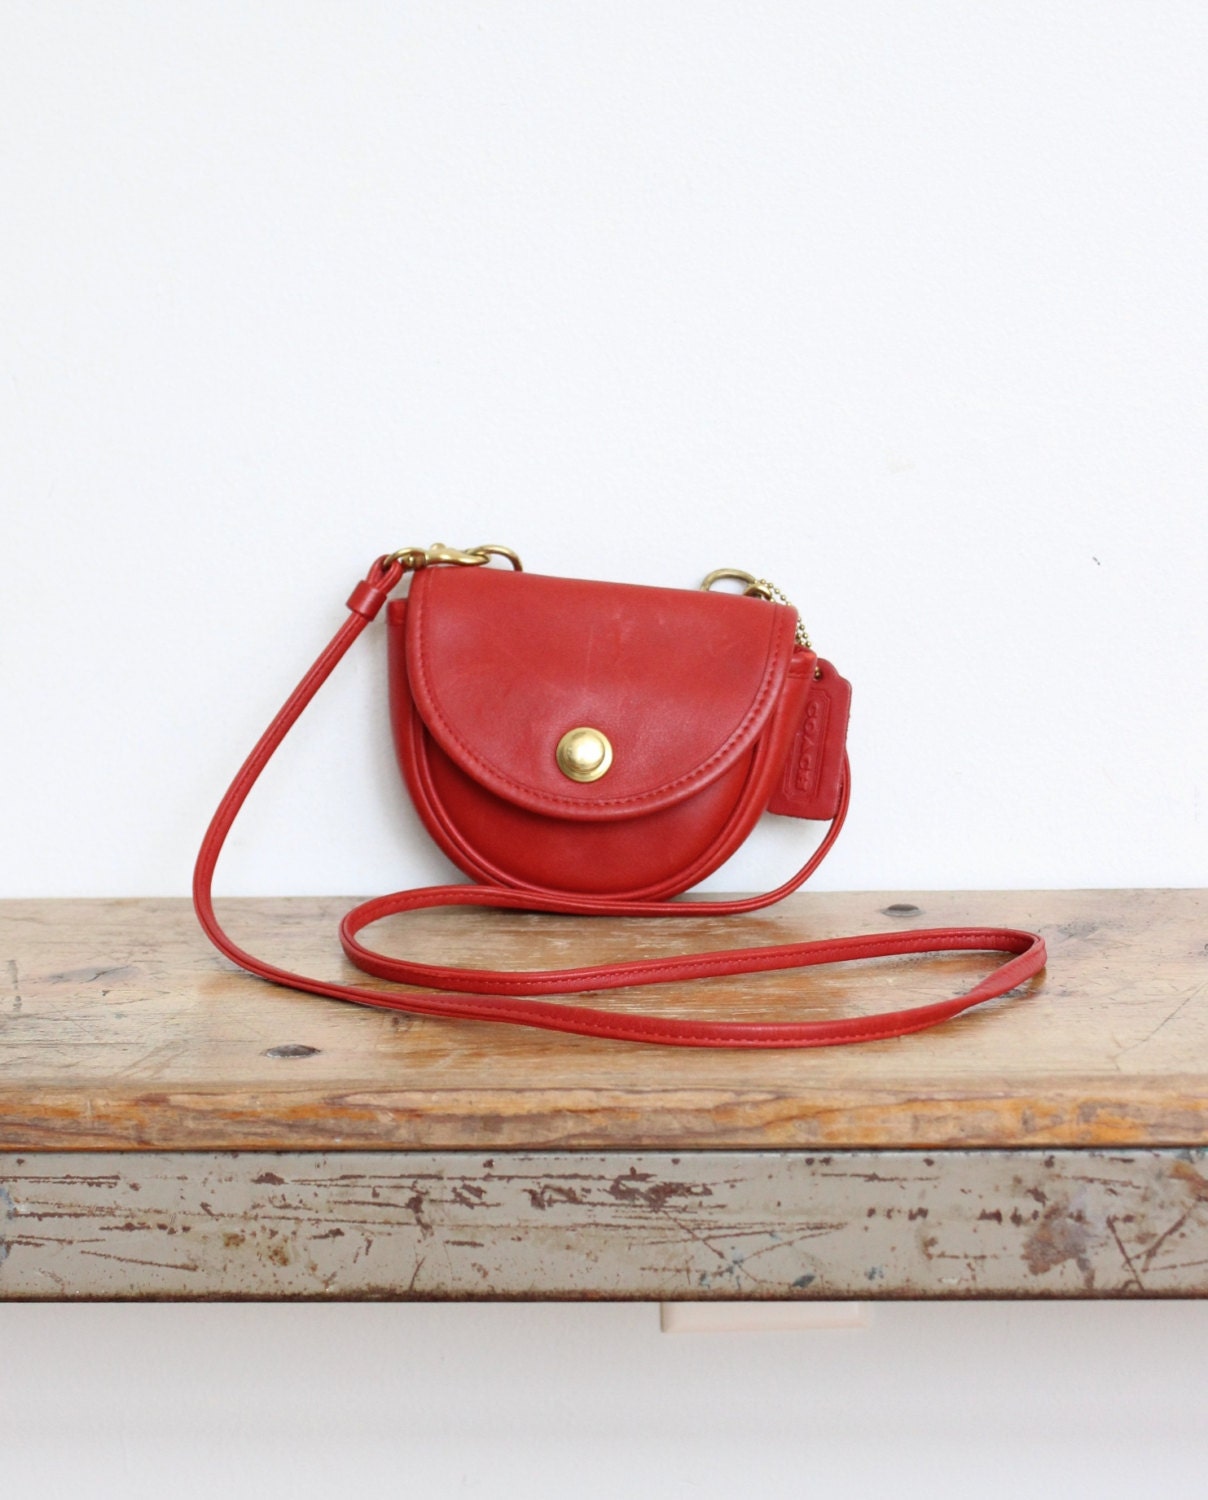 Vintage Coach Bag // Mini Messenger Crossbody Belt Bag in Red